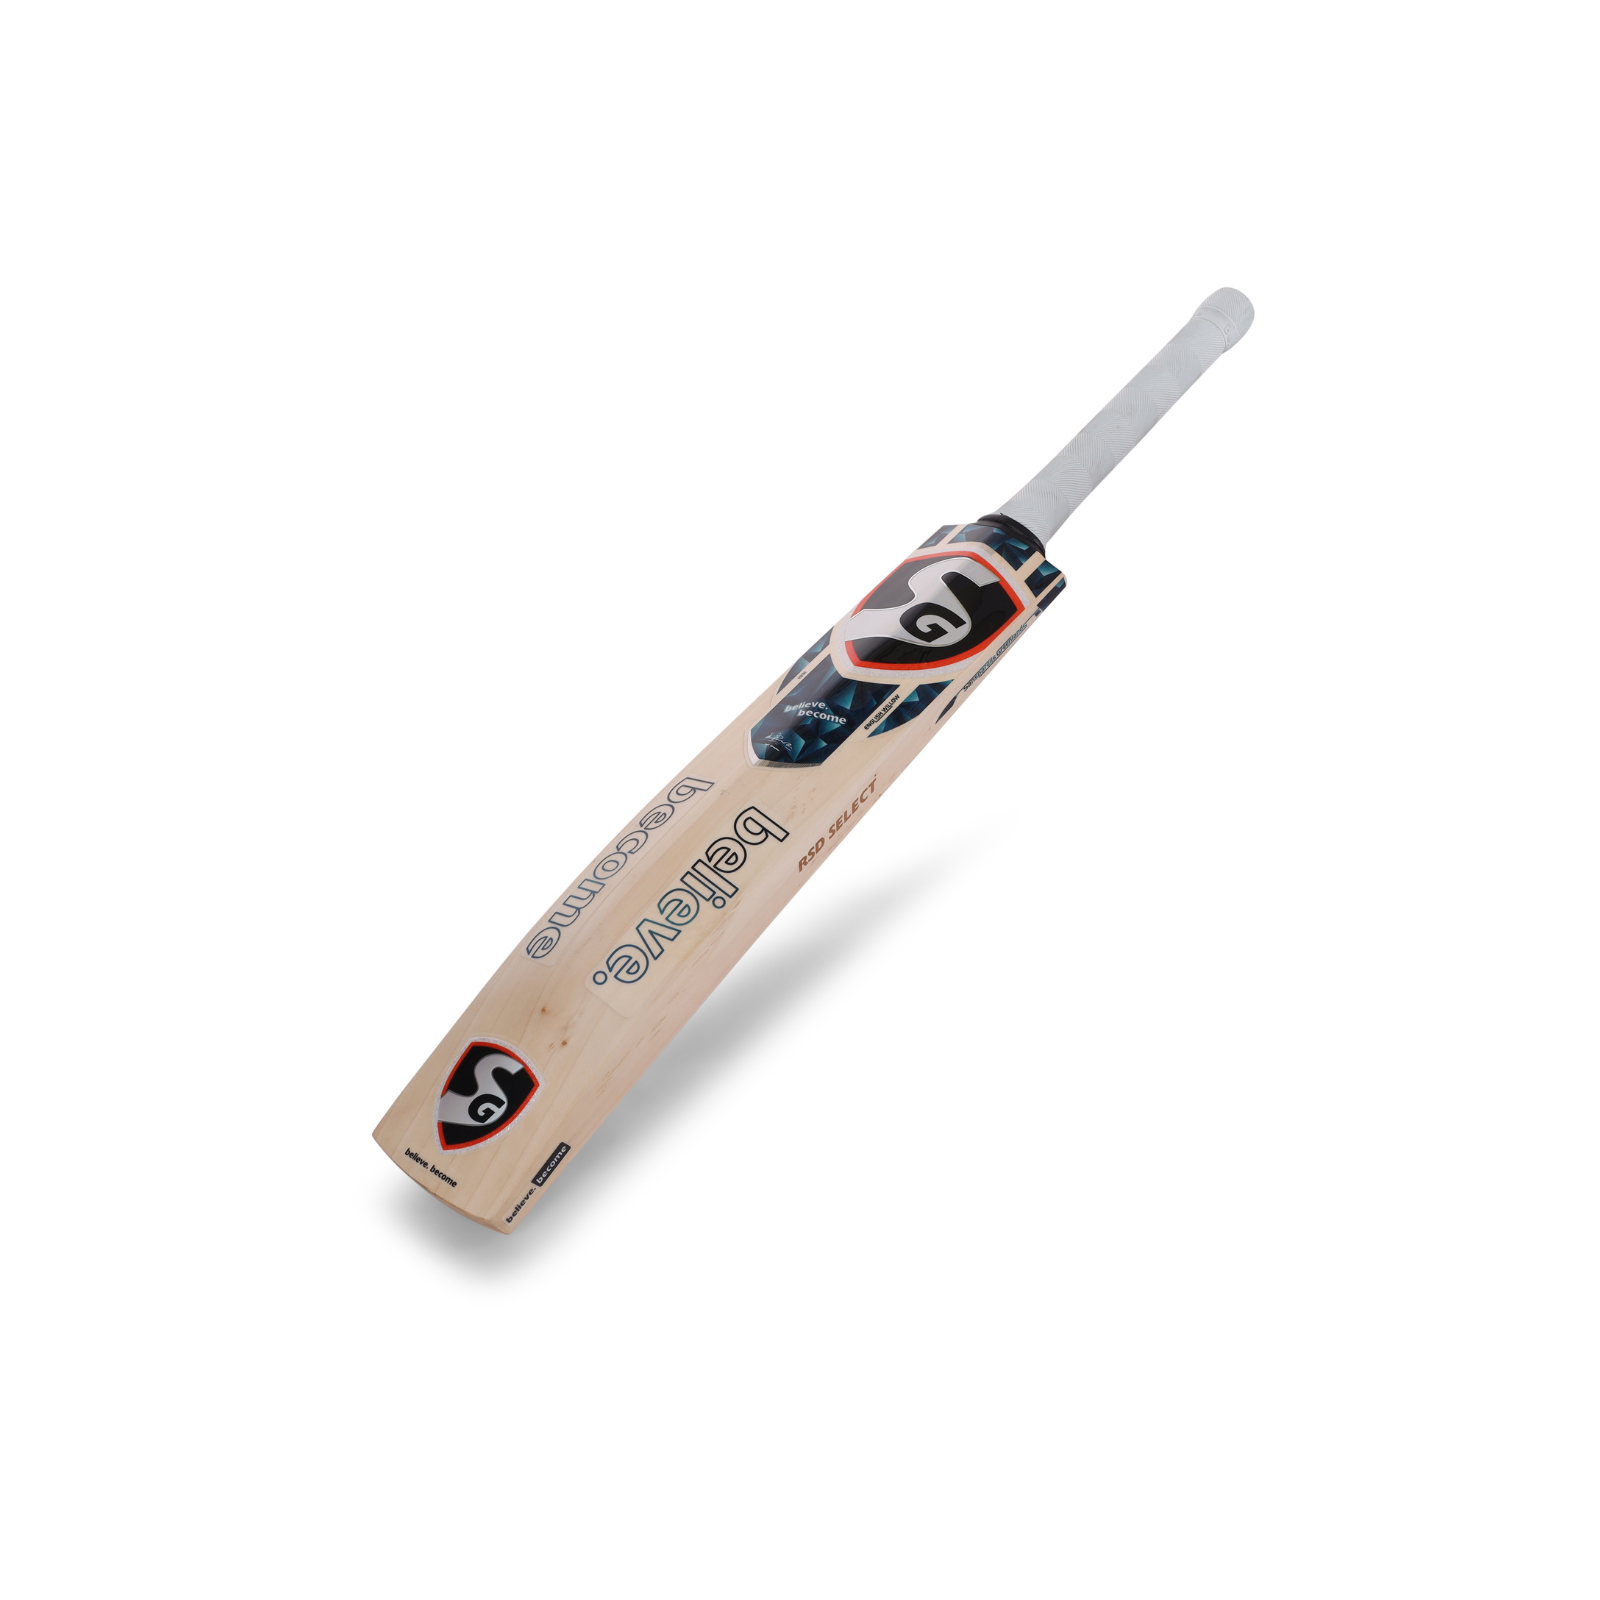 SG RSD® Select English Willow Cricket Bat